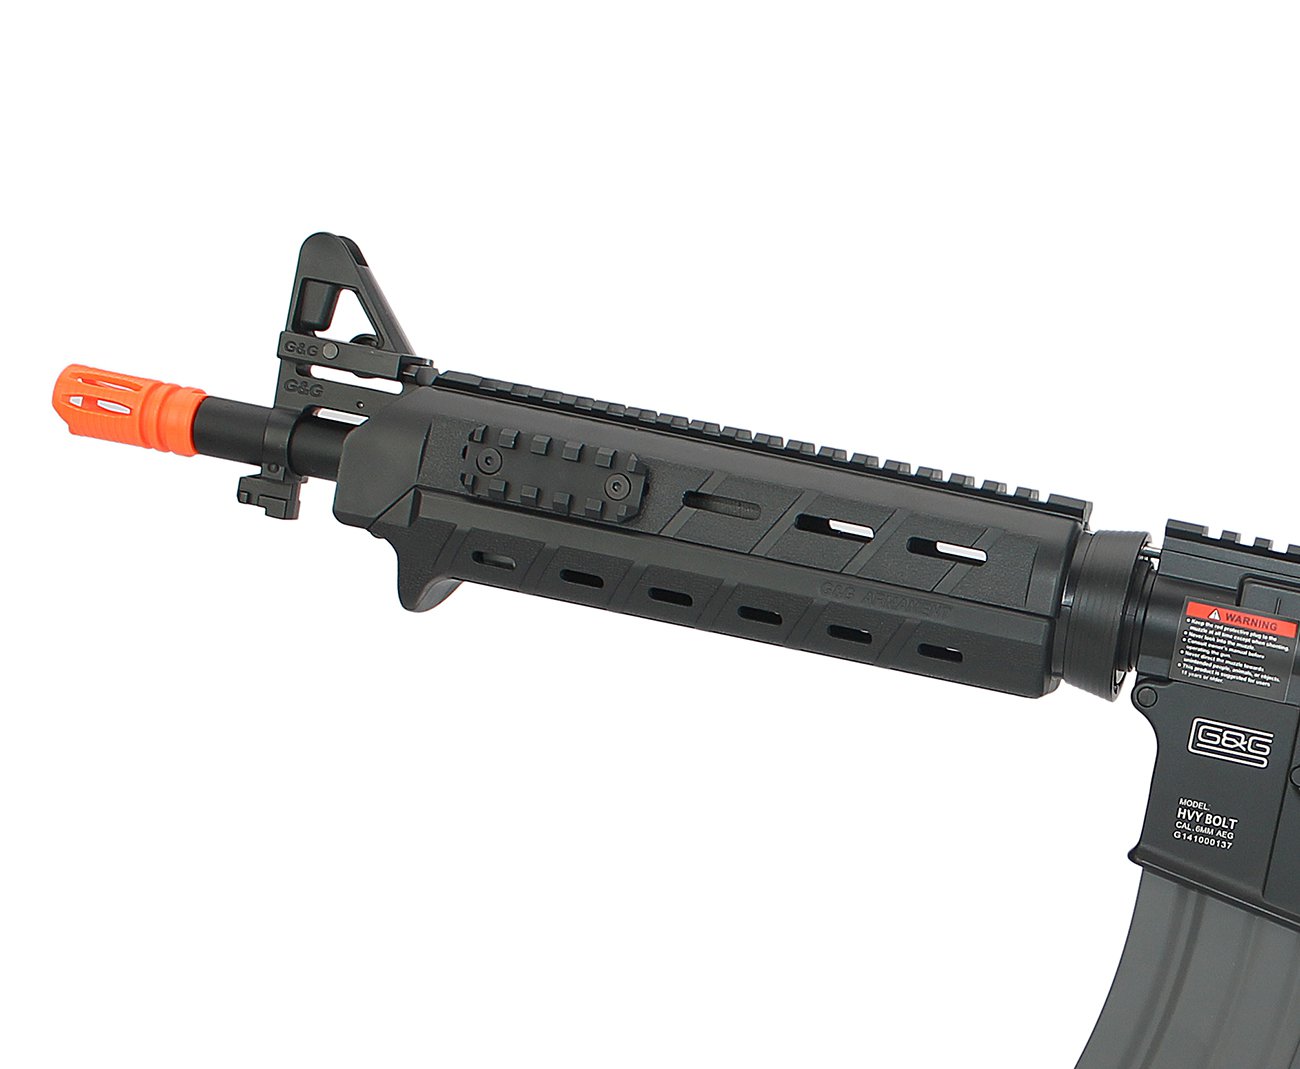 Rifle De Airsoft G&g Hb16 Mod 0 - Cal 6.0mm - Bivolt